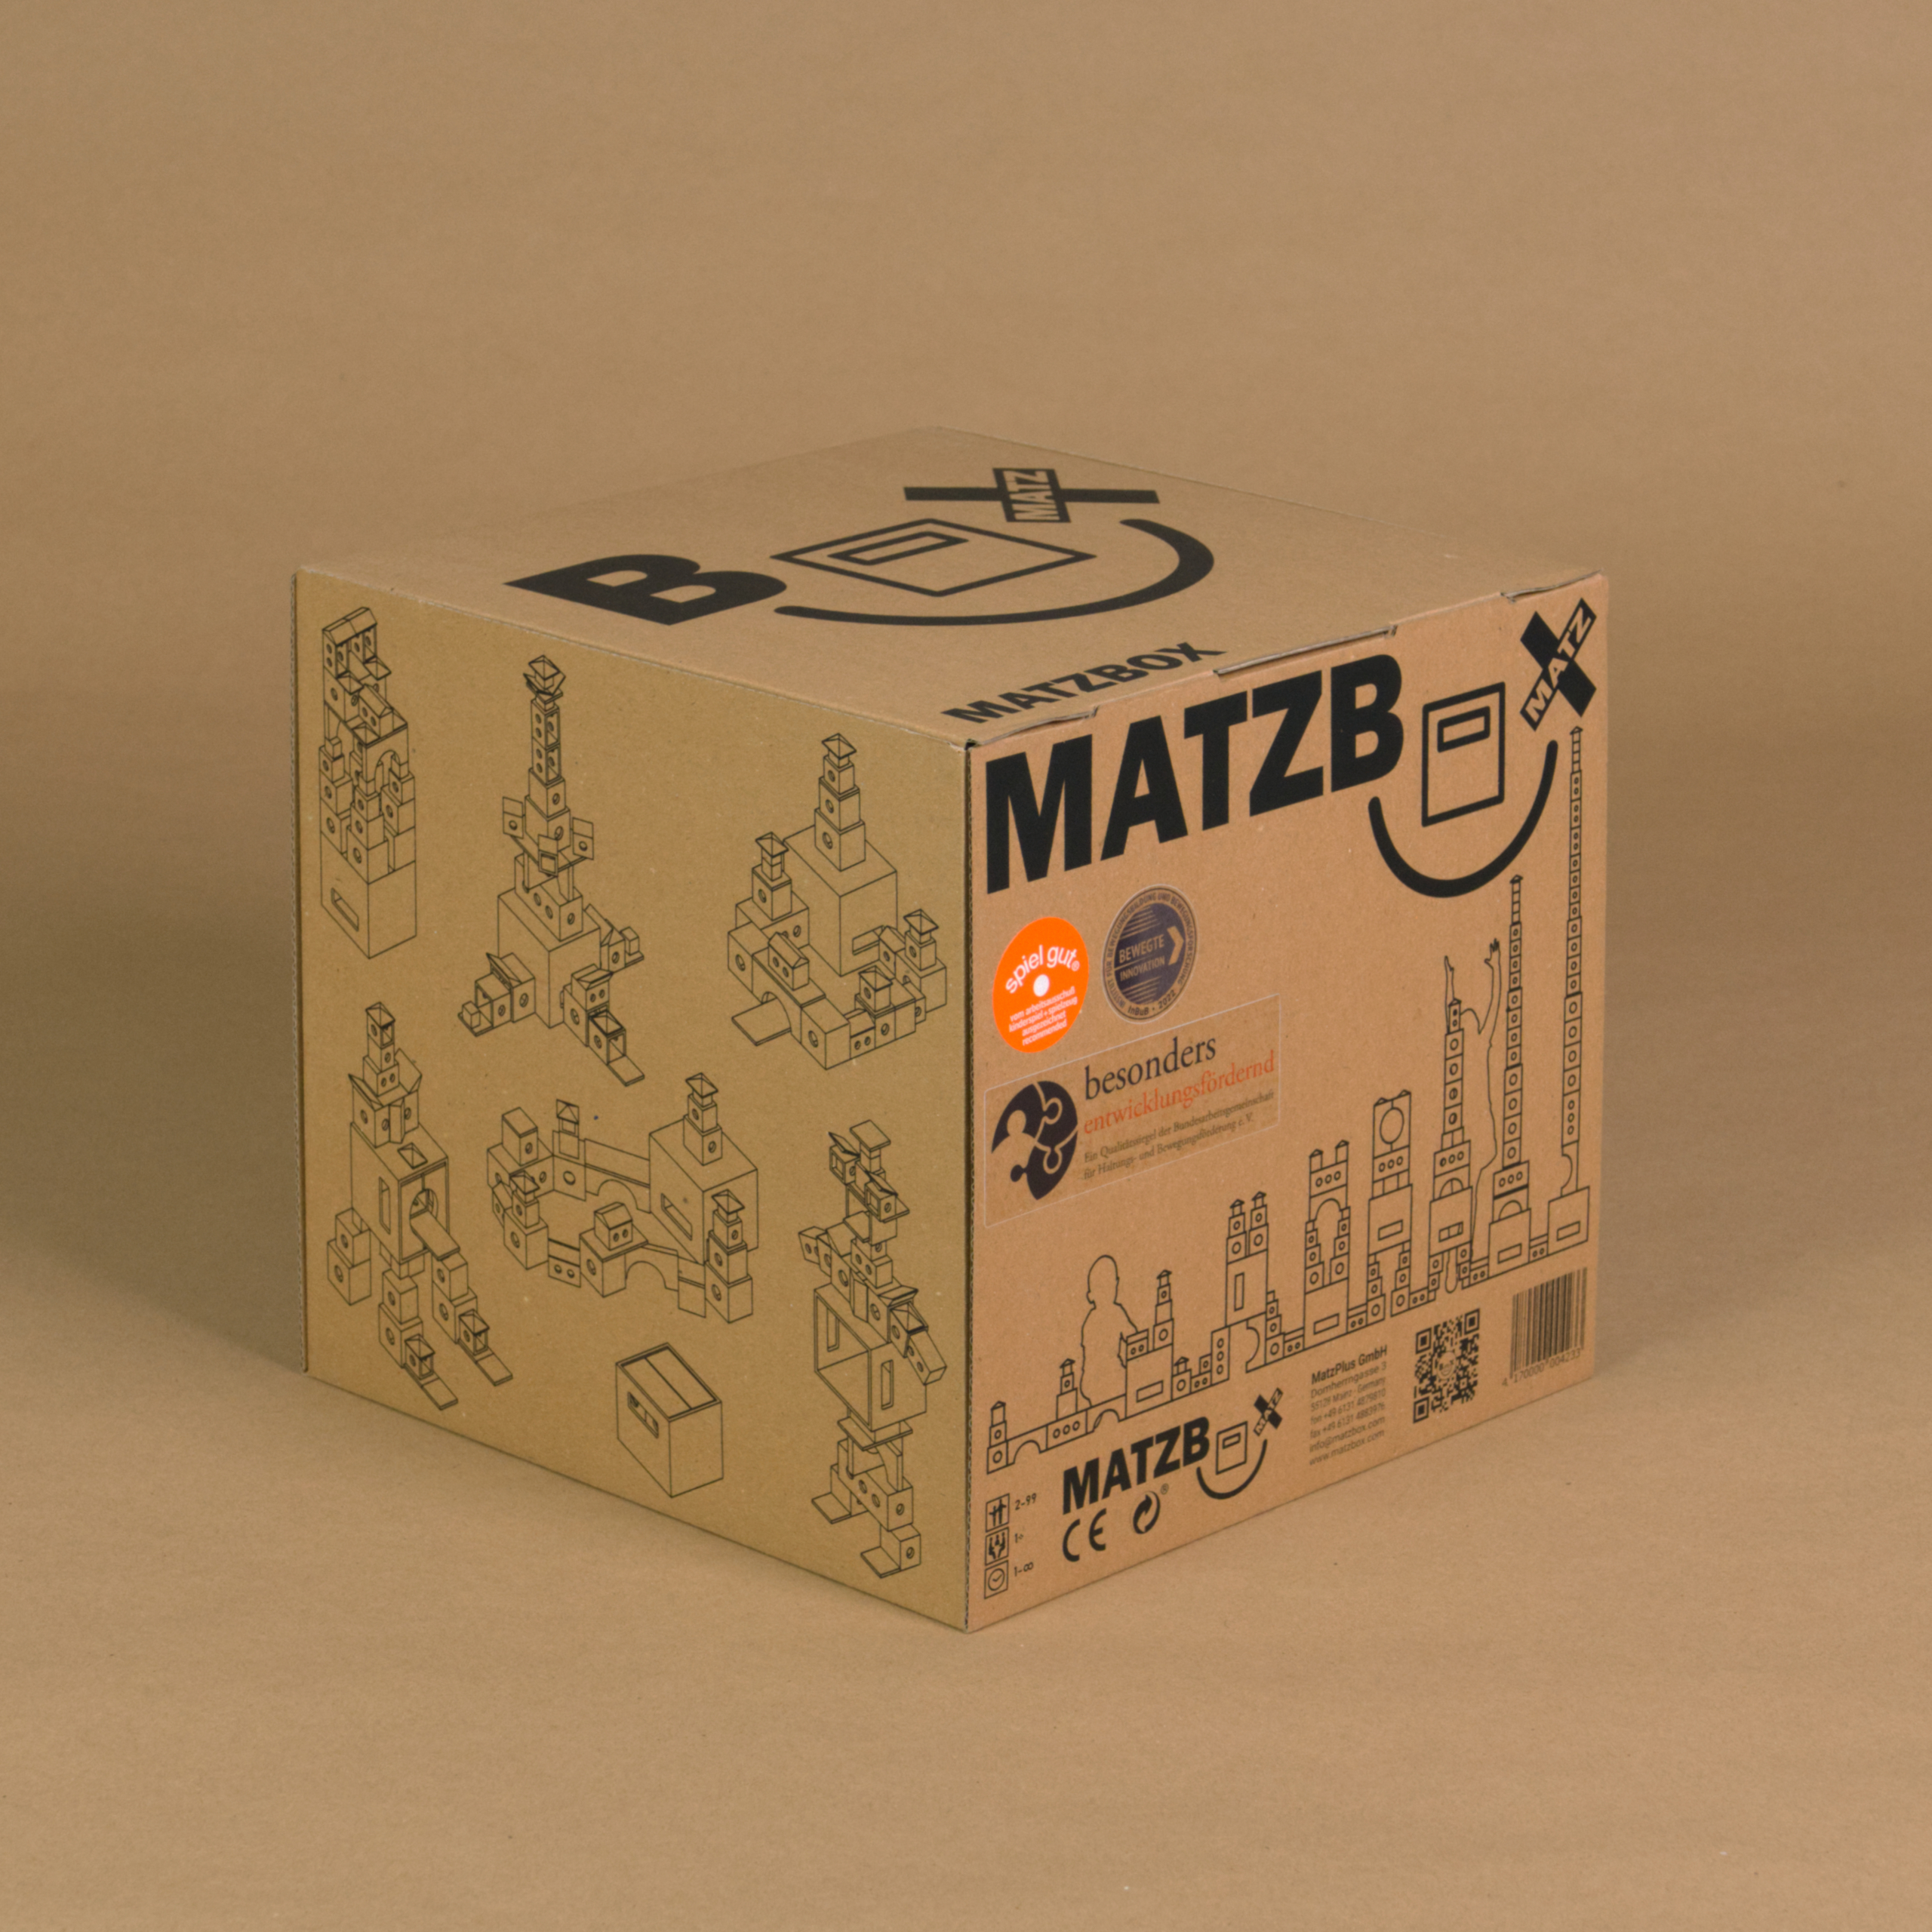 Die Matzbox steht in der originalen Verpackung aus Pappe, die noch komplett entfaltet ist. Sichtbar sind drei Seiten: Der Deckel und zwei der Seiten. Auf der Box sind mögliche Bauanleitungen grafisch mit Outlines dargestellt. Außerdem ist das Logo der Box zu sehen. Die Pappe ist braun, der Aufdruck schwarz.